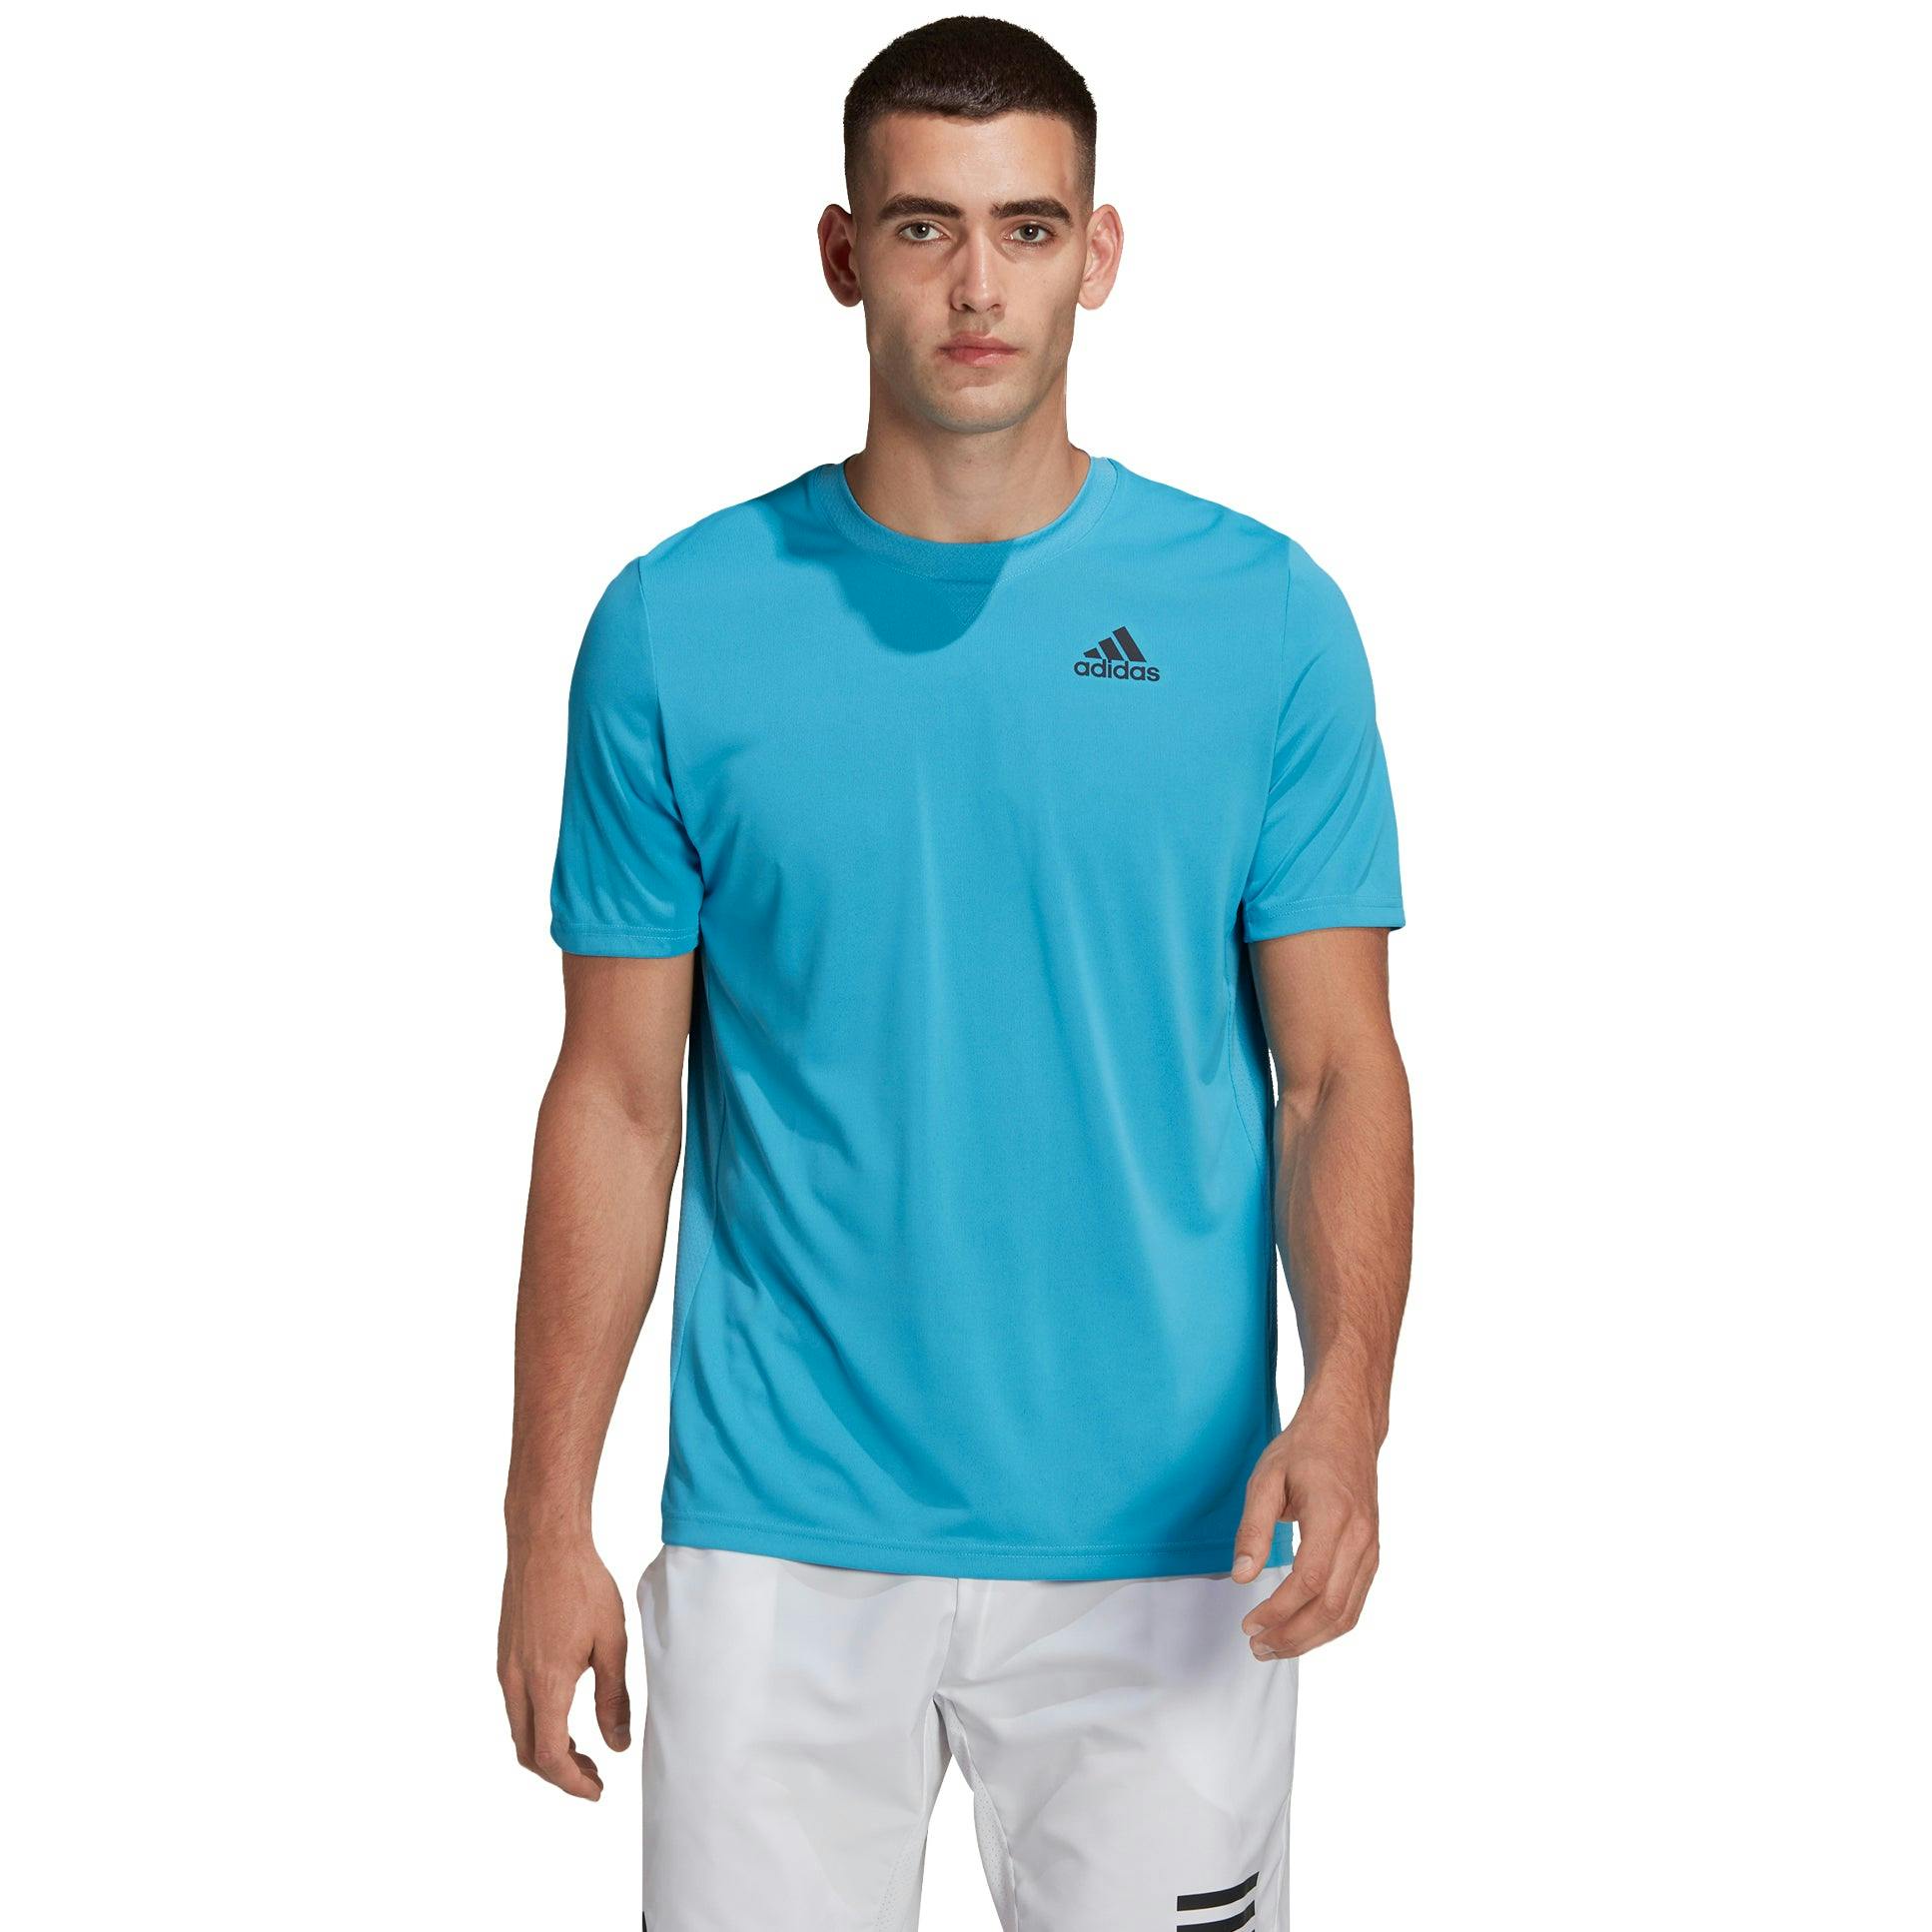 Adidas Men's HEAT.RDY Tennis T-Shirt